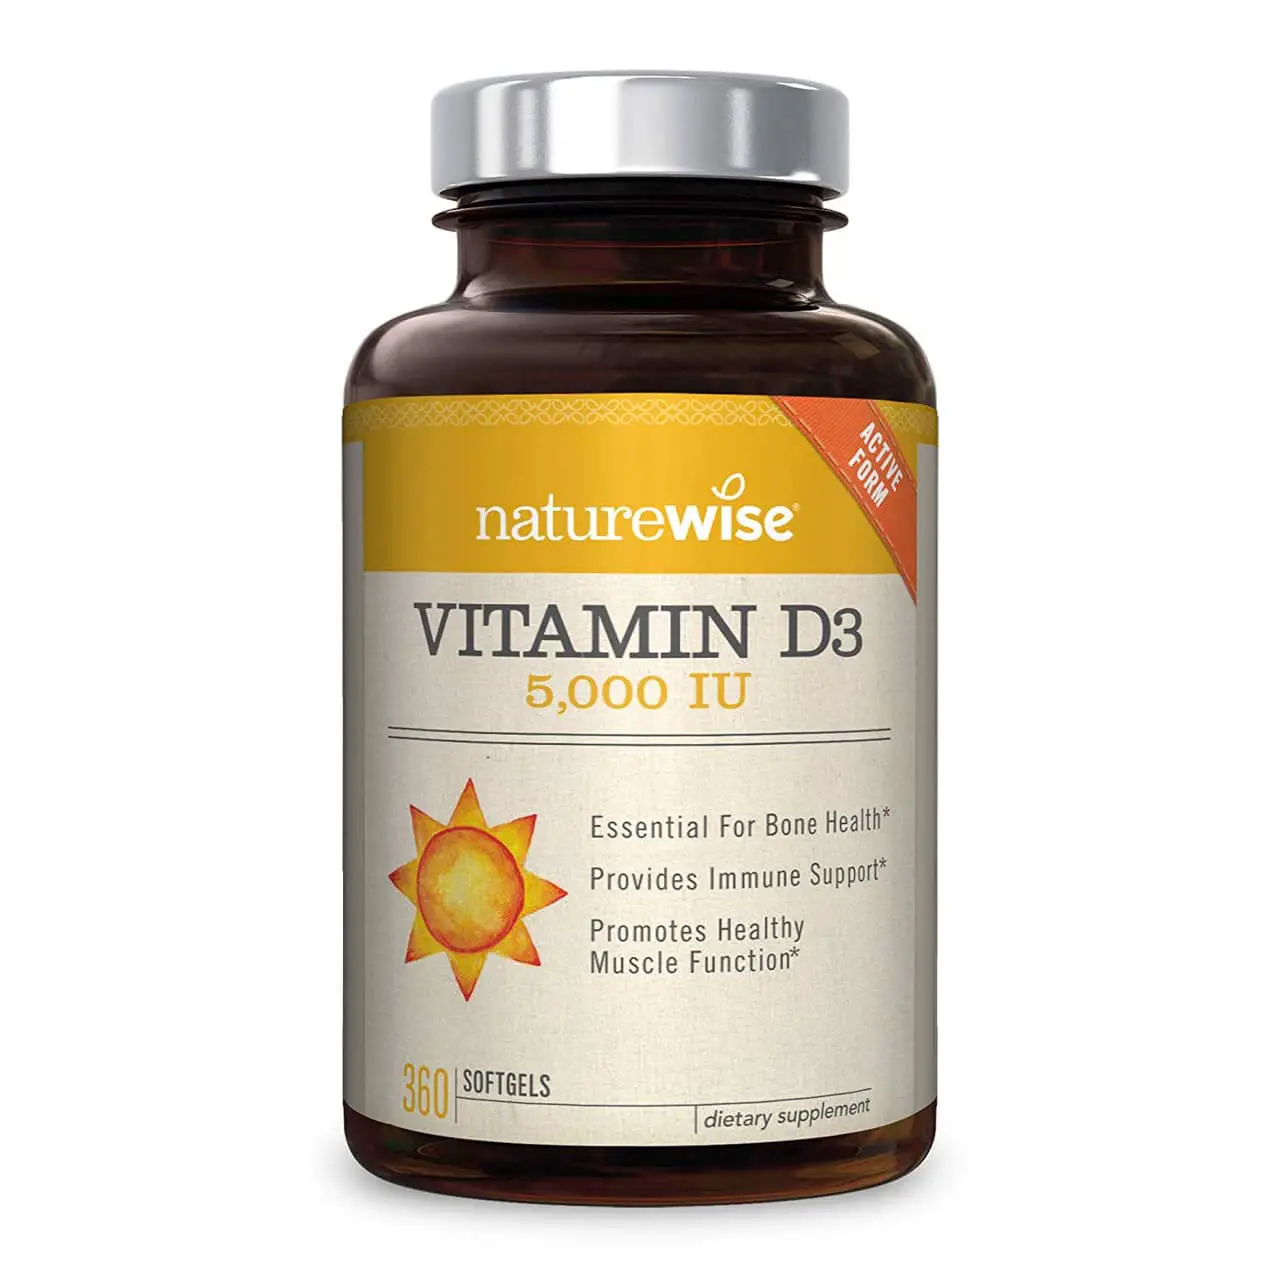 NatureWise Vitamin D3 5,000 IU 360 Count